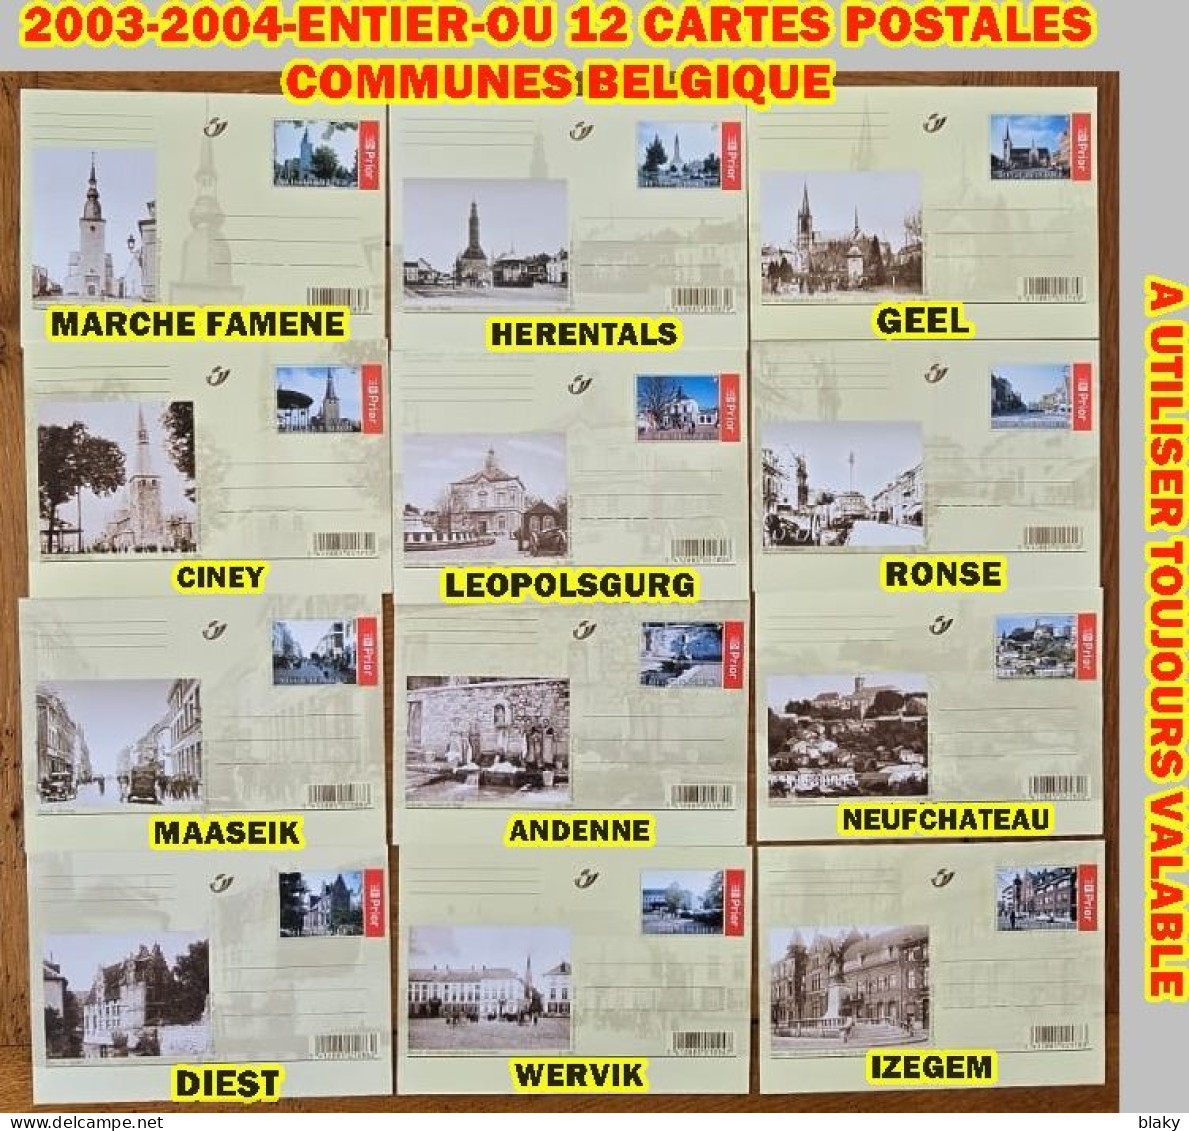 2003-2004-ENTIER-OU 12 CARTES POSTALES COMMUNES BELGES * IMPORTANT PRE TIMBREES - Cartoline Illustrate (1971-2014) [BK]